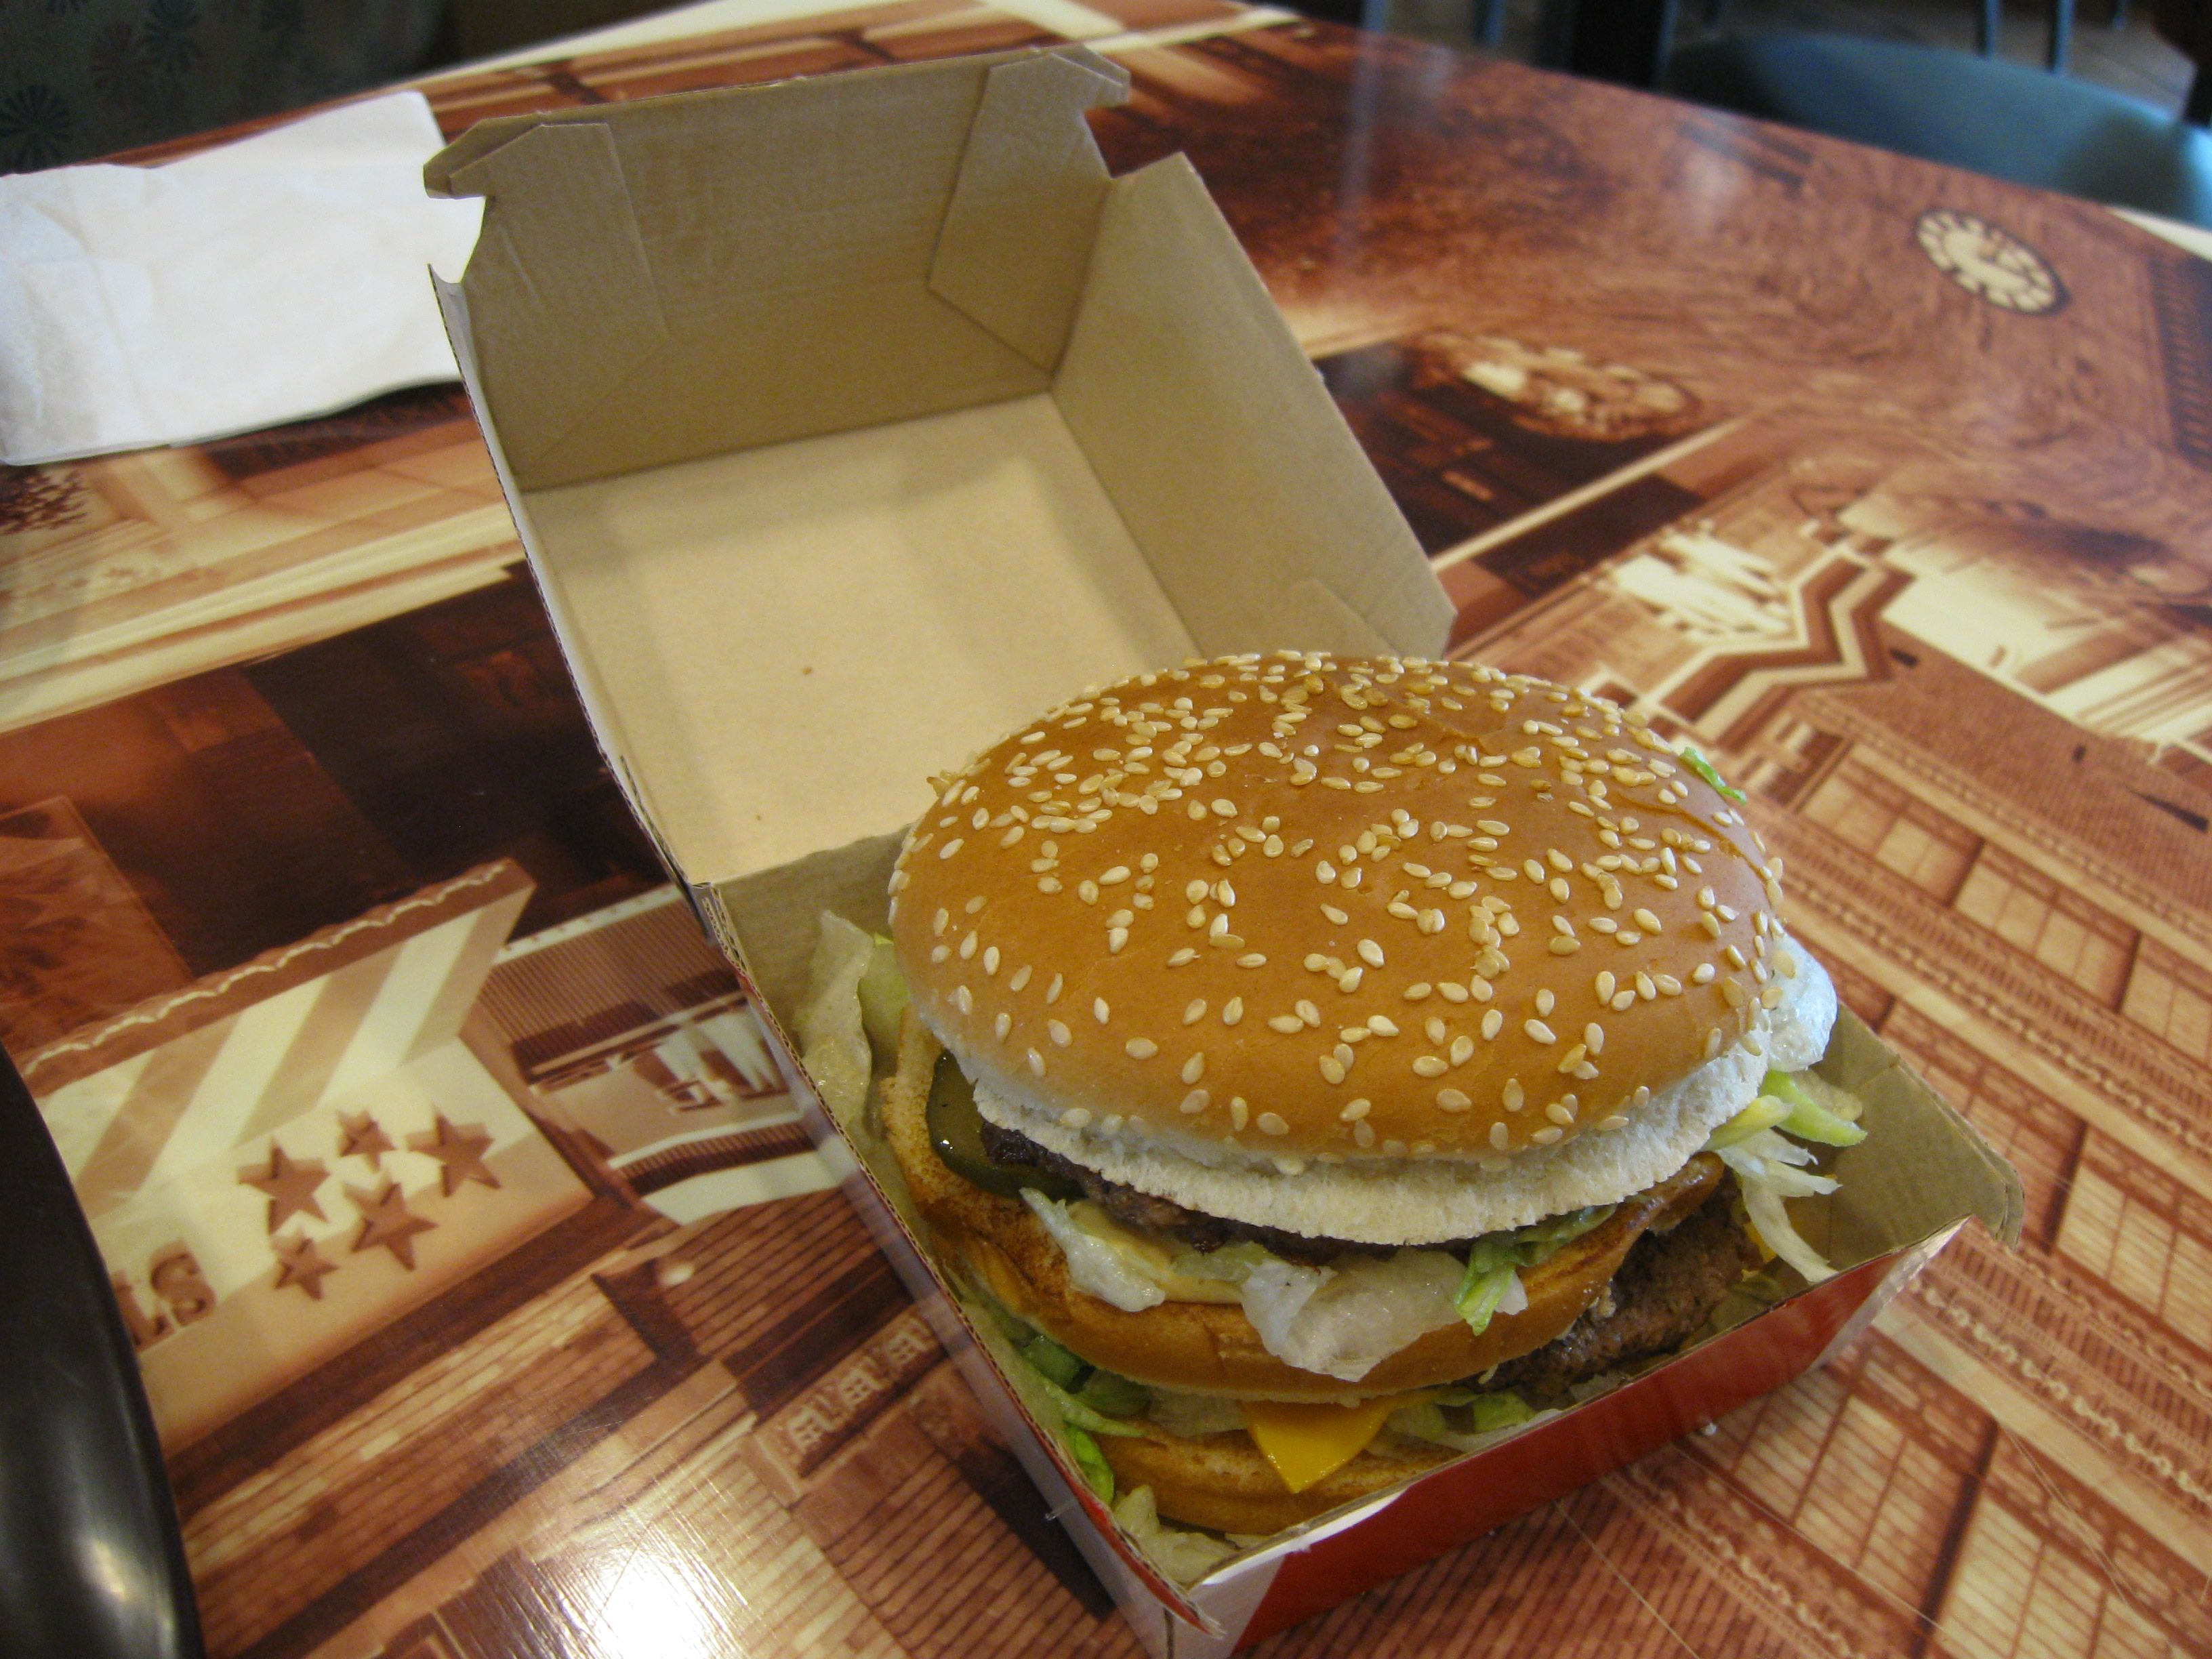 A Big Mac in its box